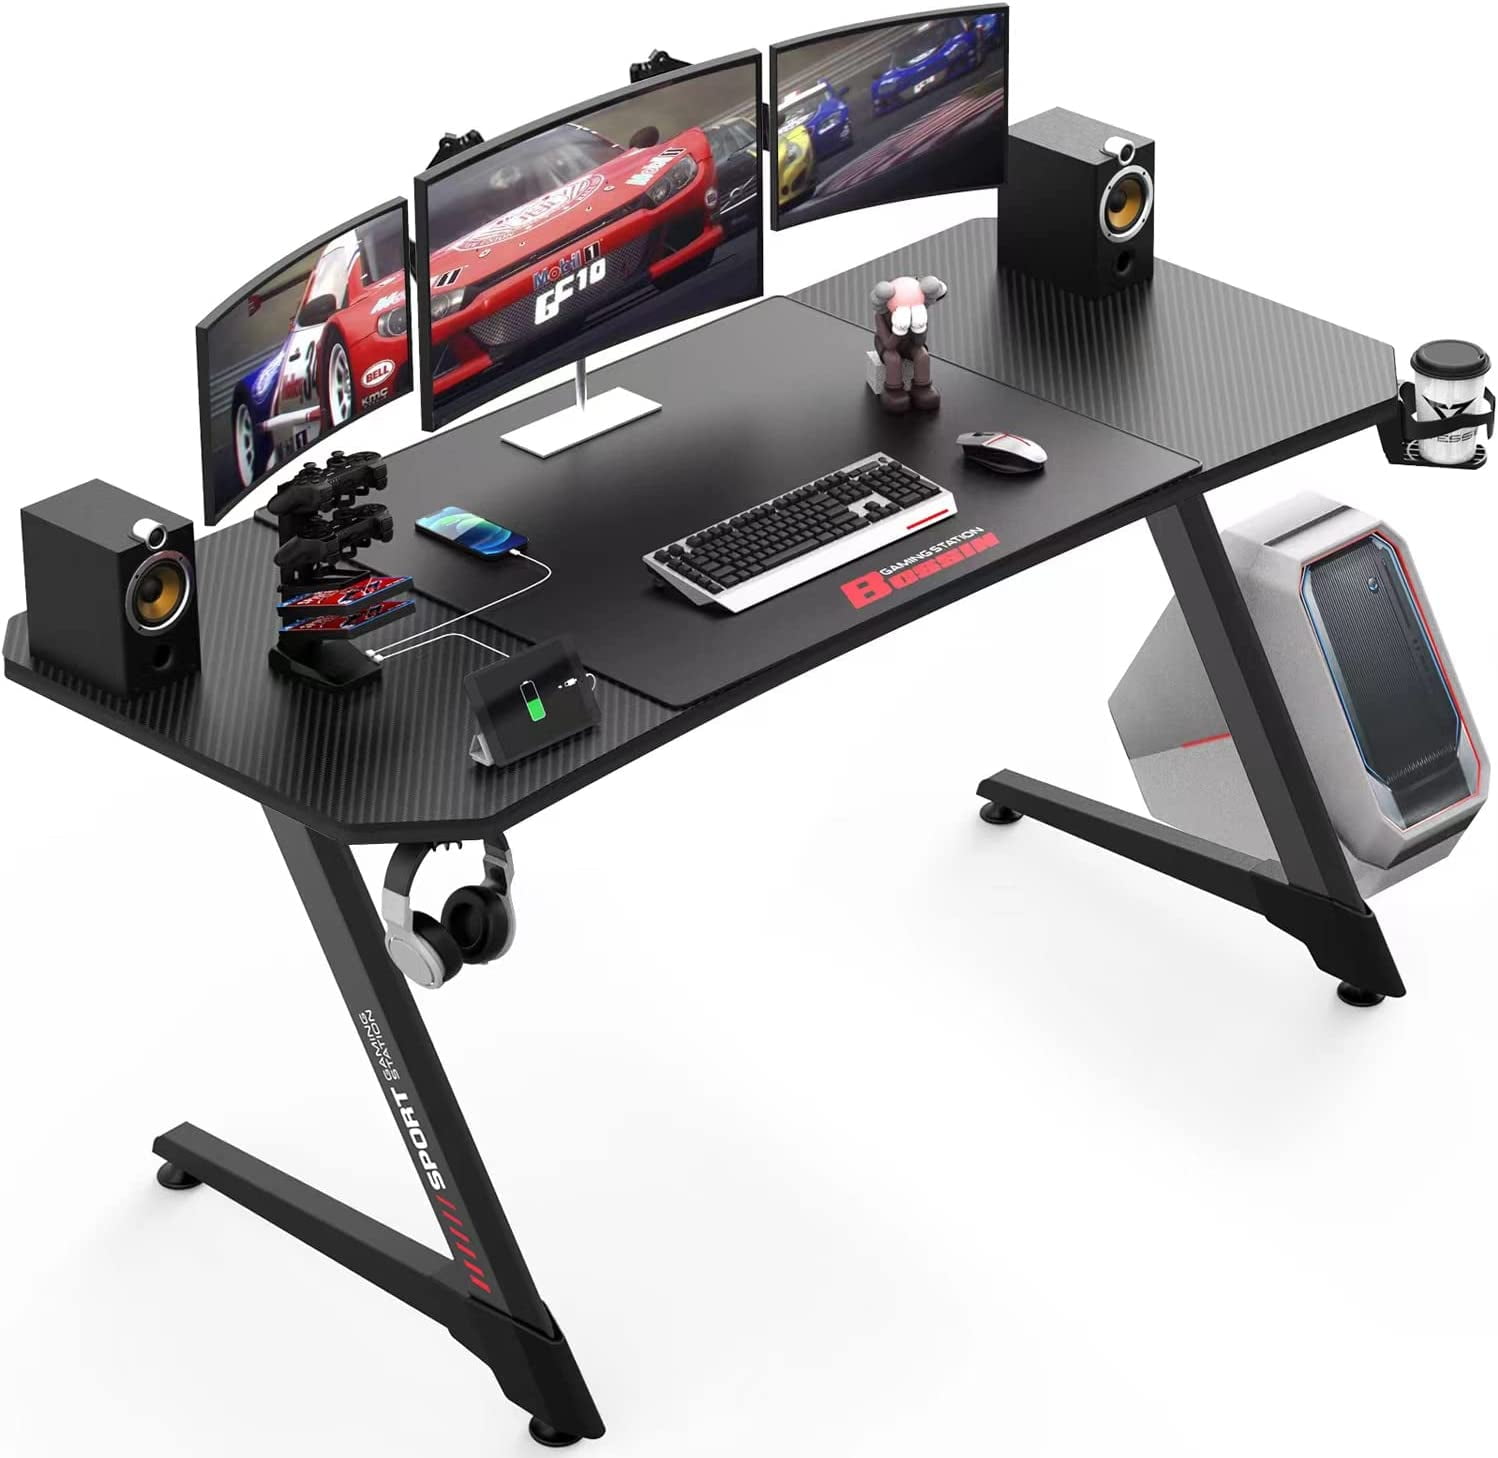  Waleaf Vitesse Gaming Desk 55 inch, Gaming Computer